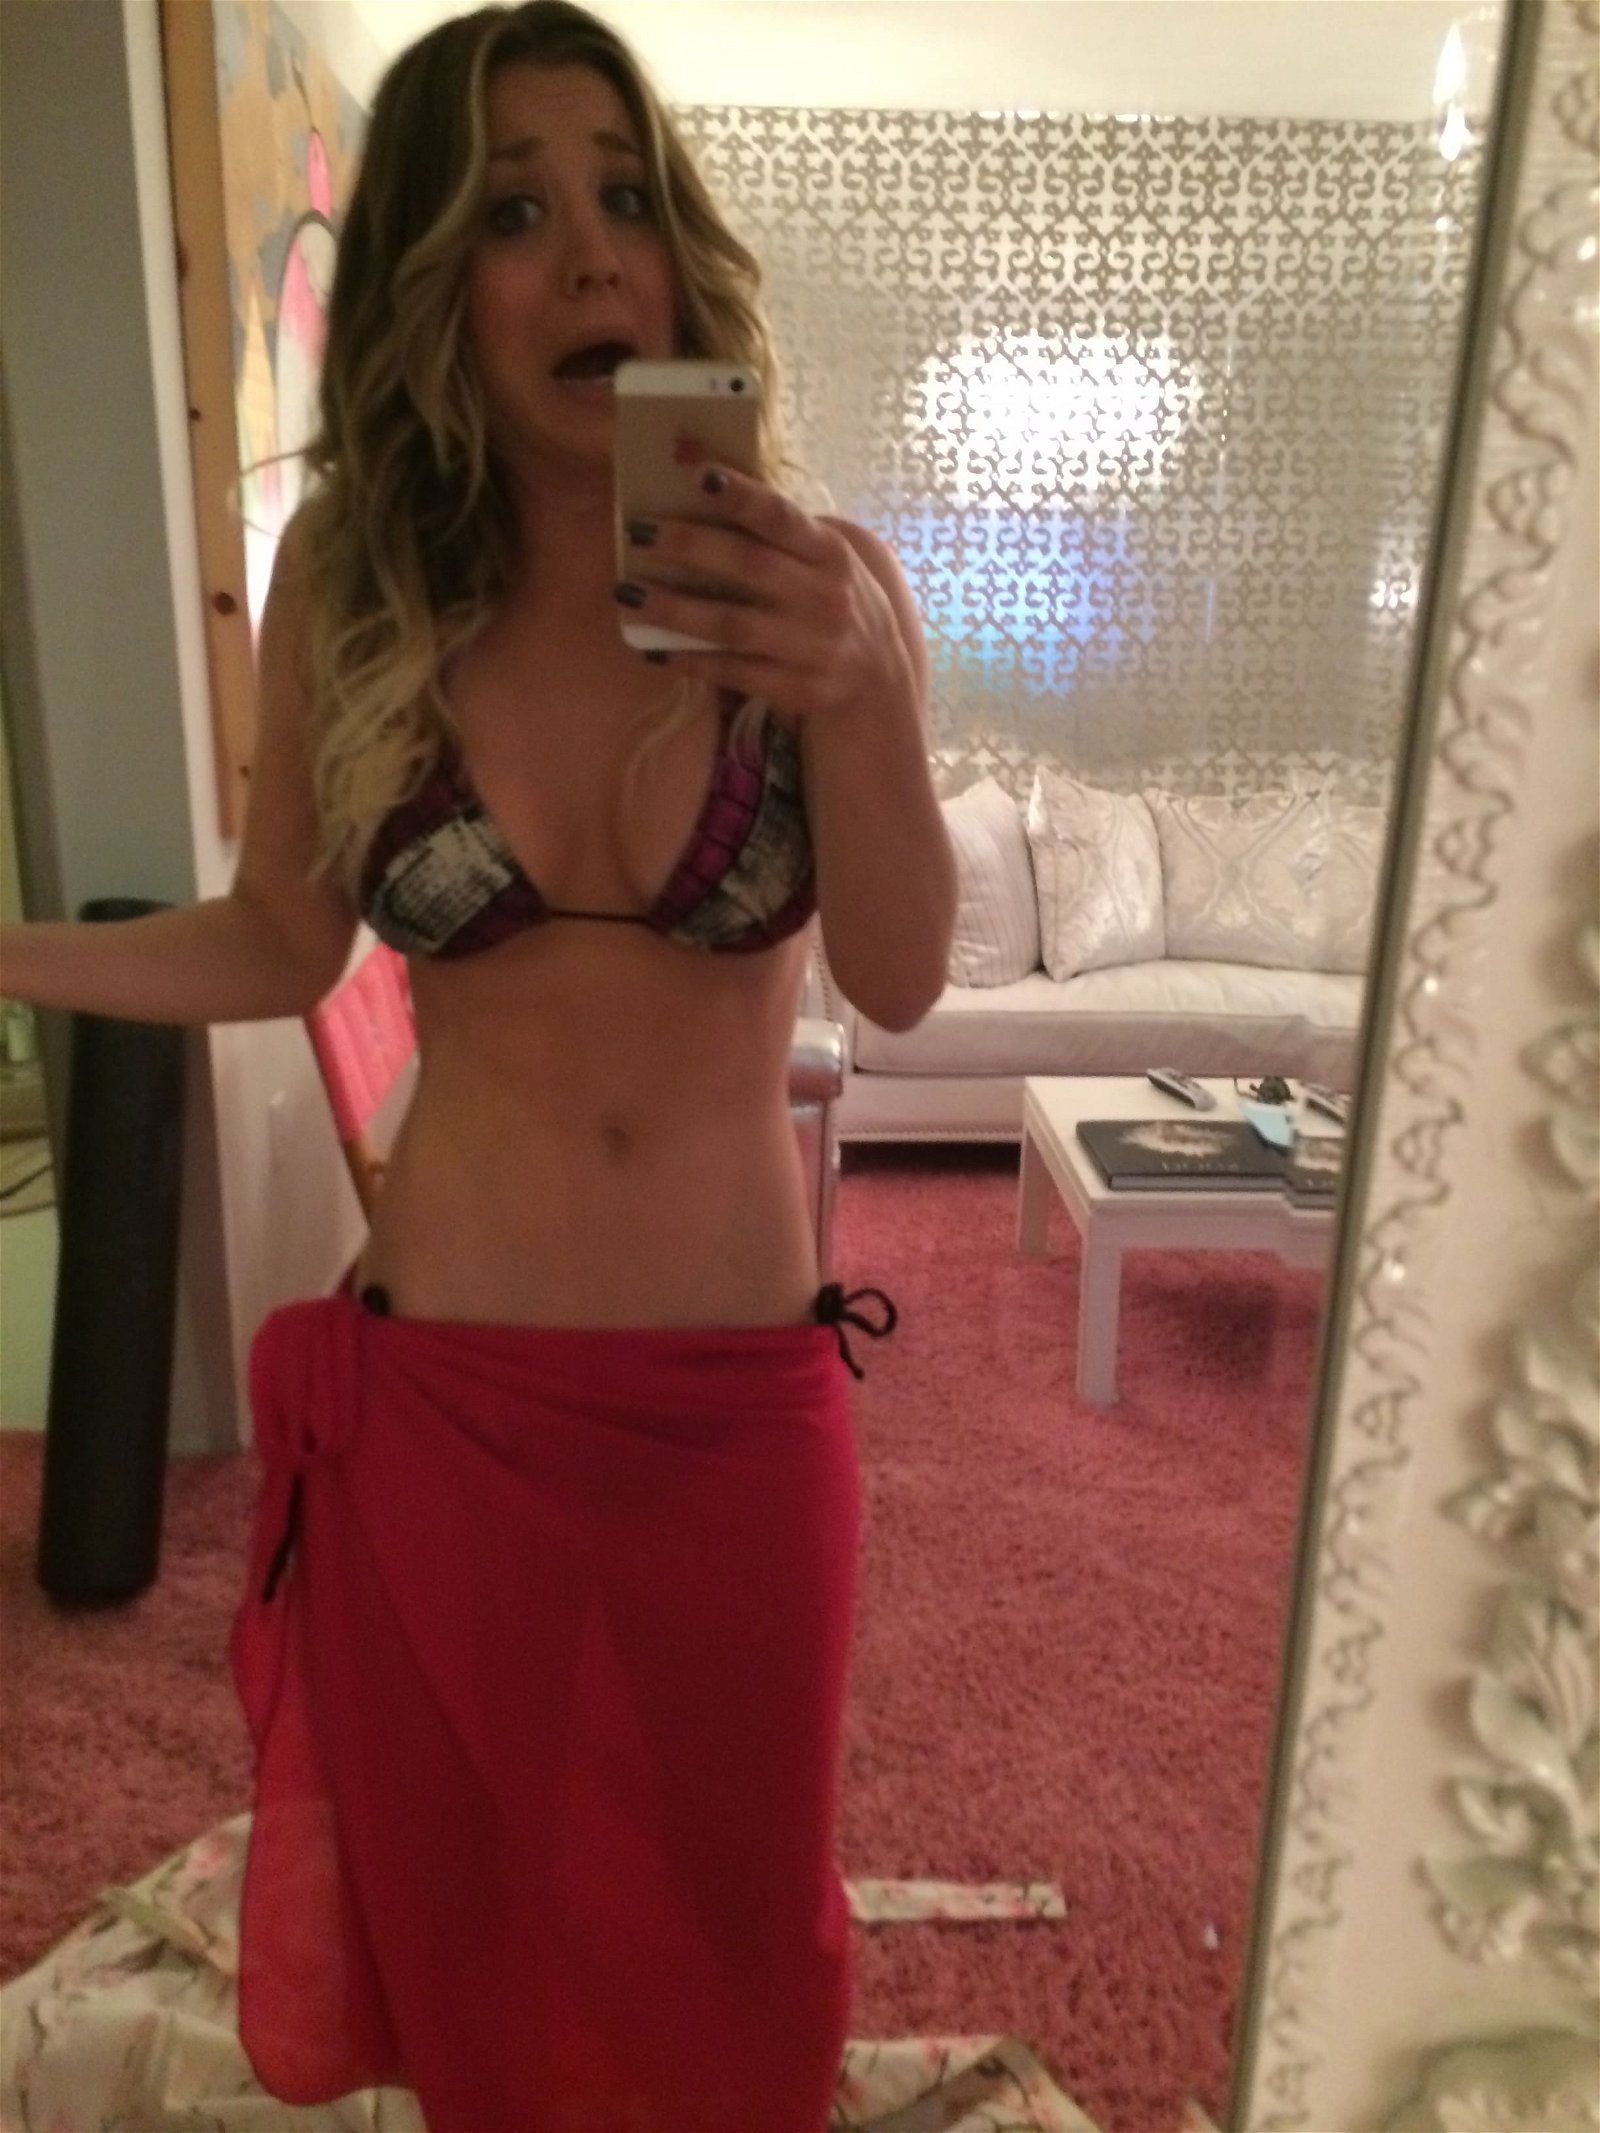 actress kaley cuoco takes a mirror pic in bikini top